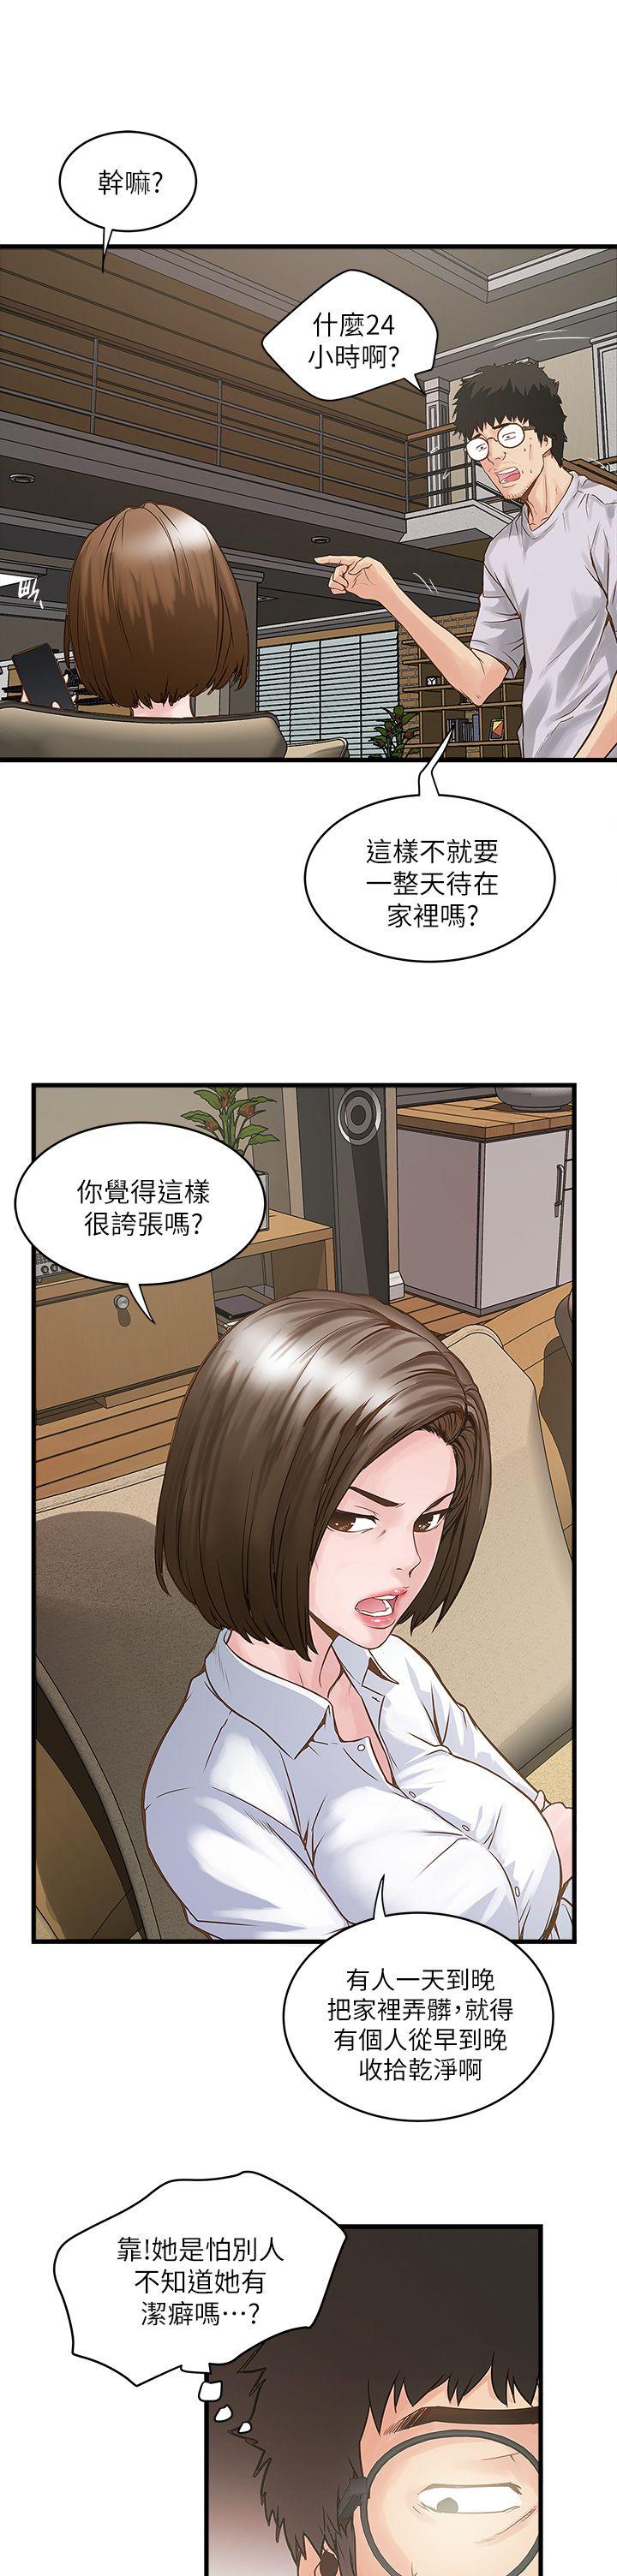 韩国污漫画 下女,初希 第1话-废物老公 49